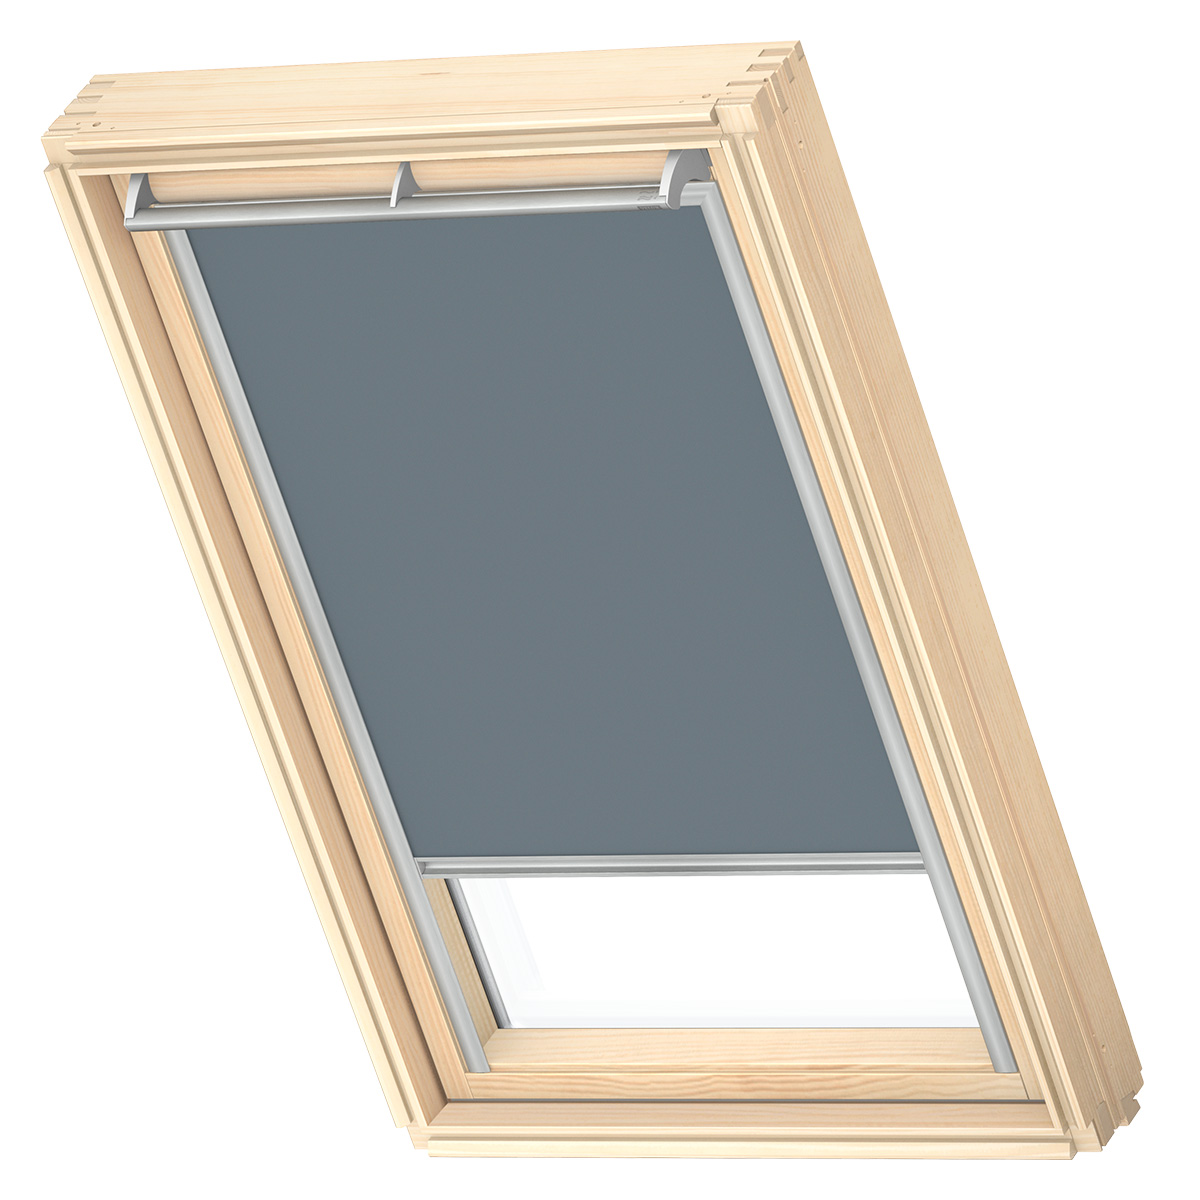 VELUX Original-Verdunkelungsrollo für VELUX Dachfenster, | Silberne Seitenschienen eBay